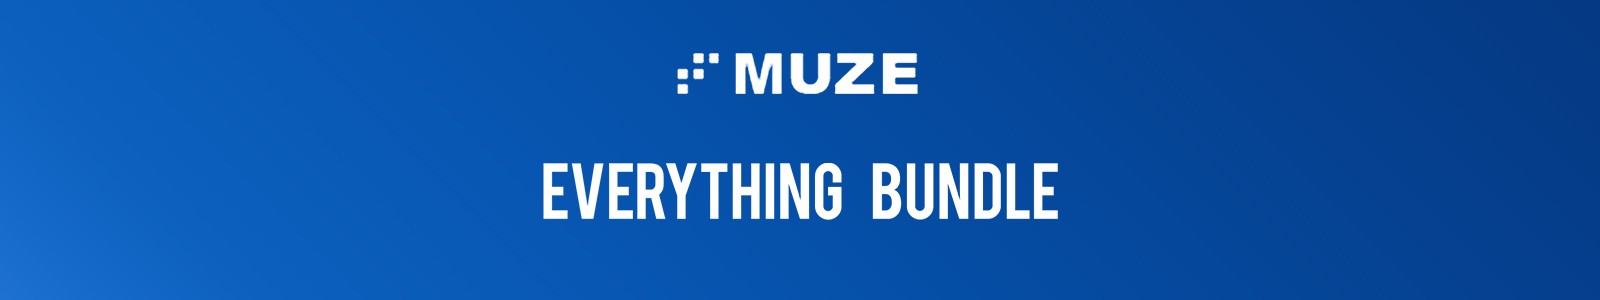 Everything Bundle by Muze